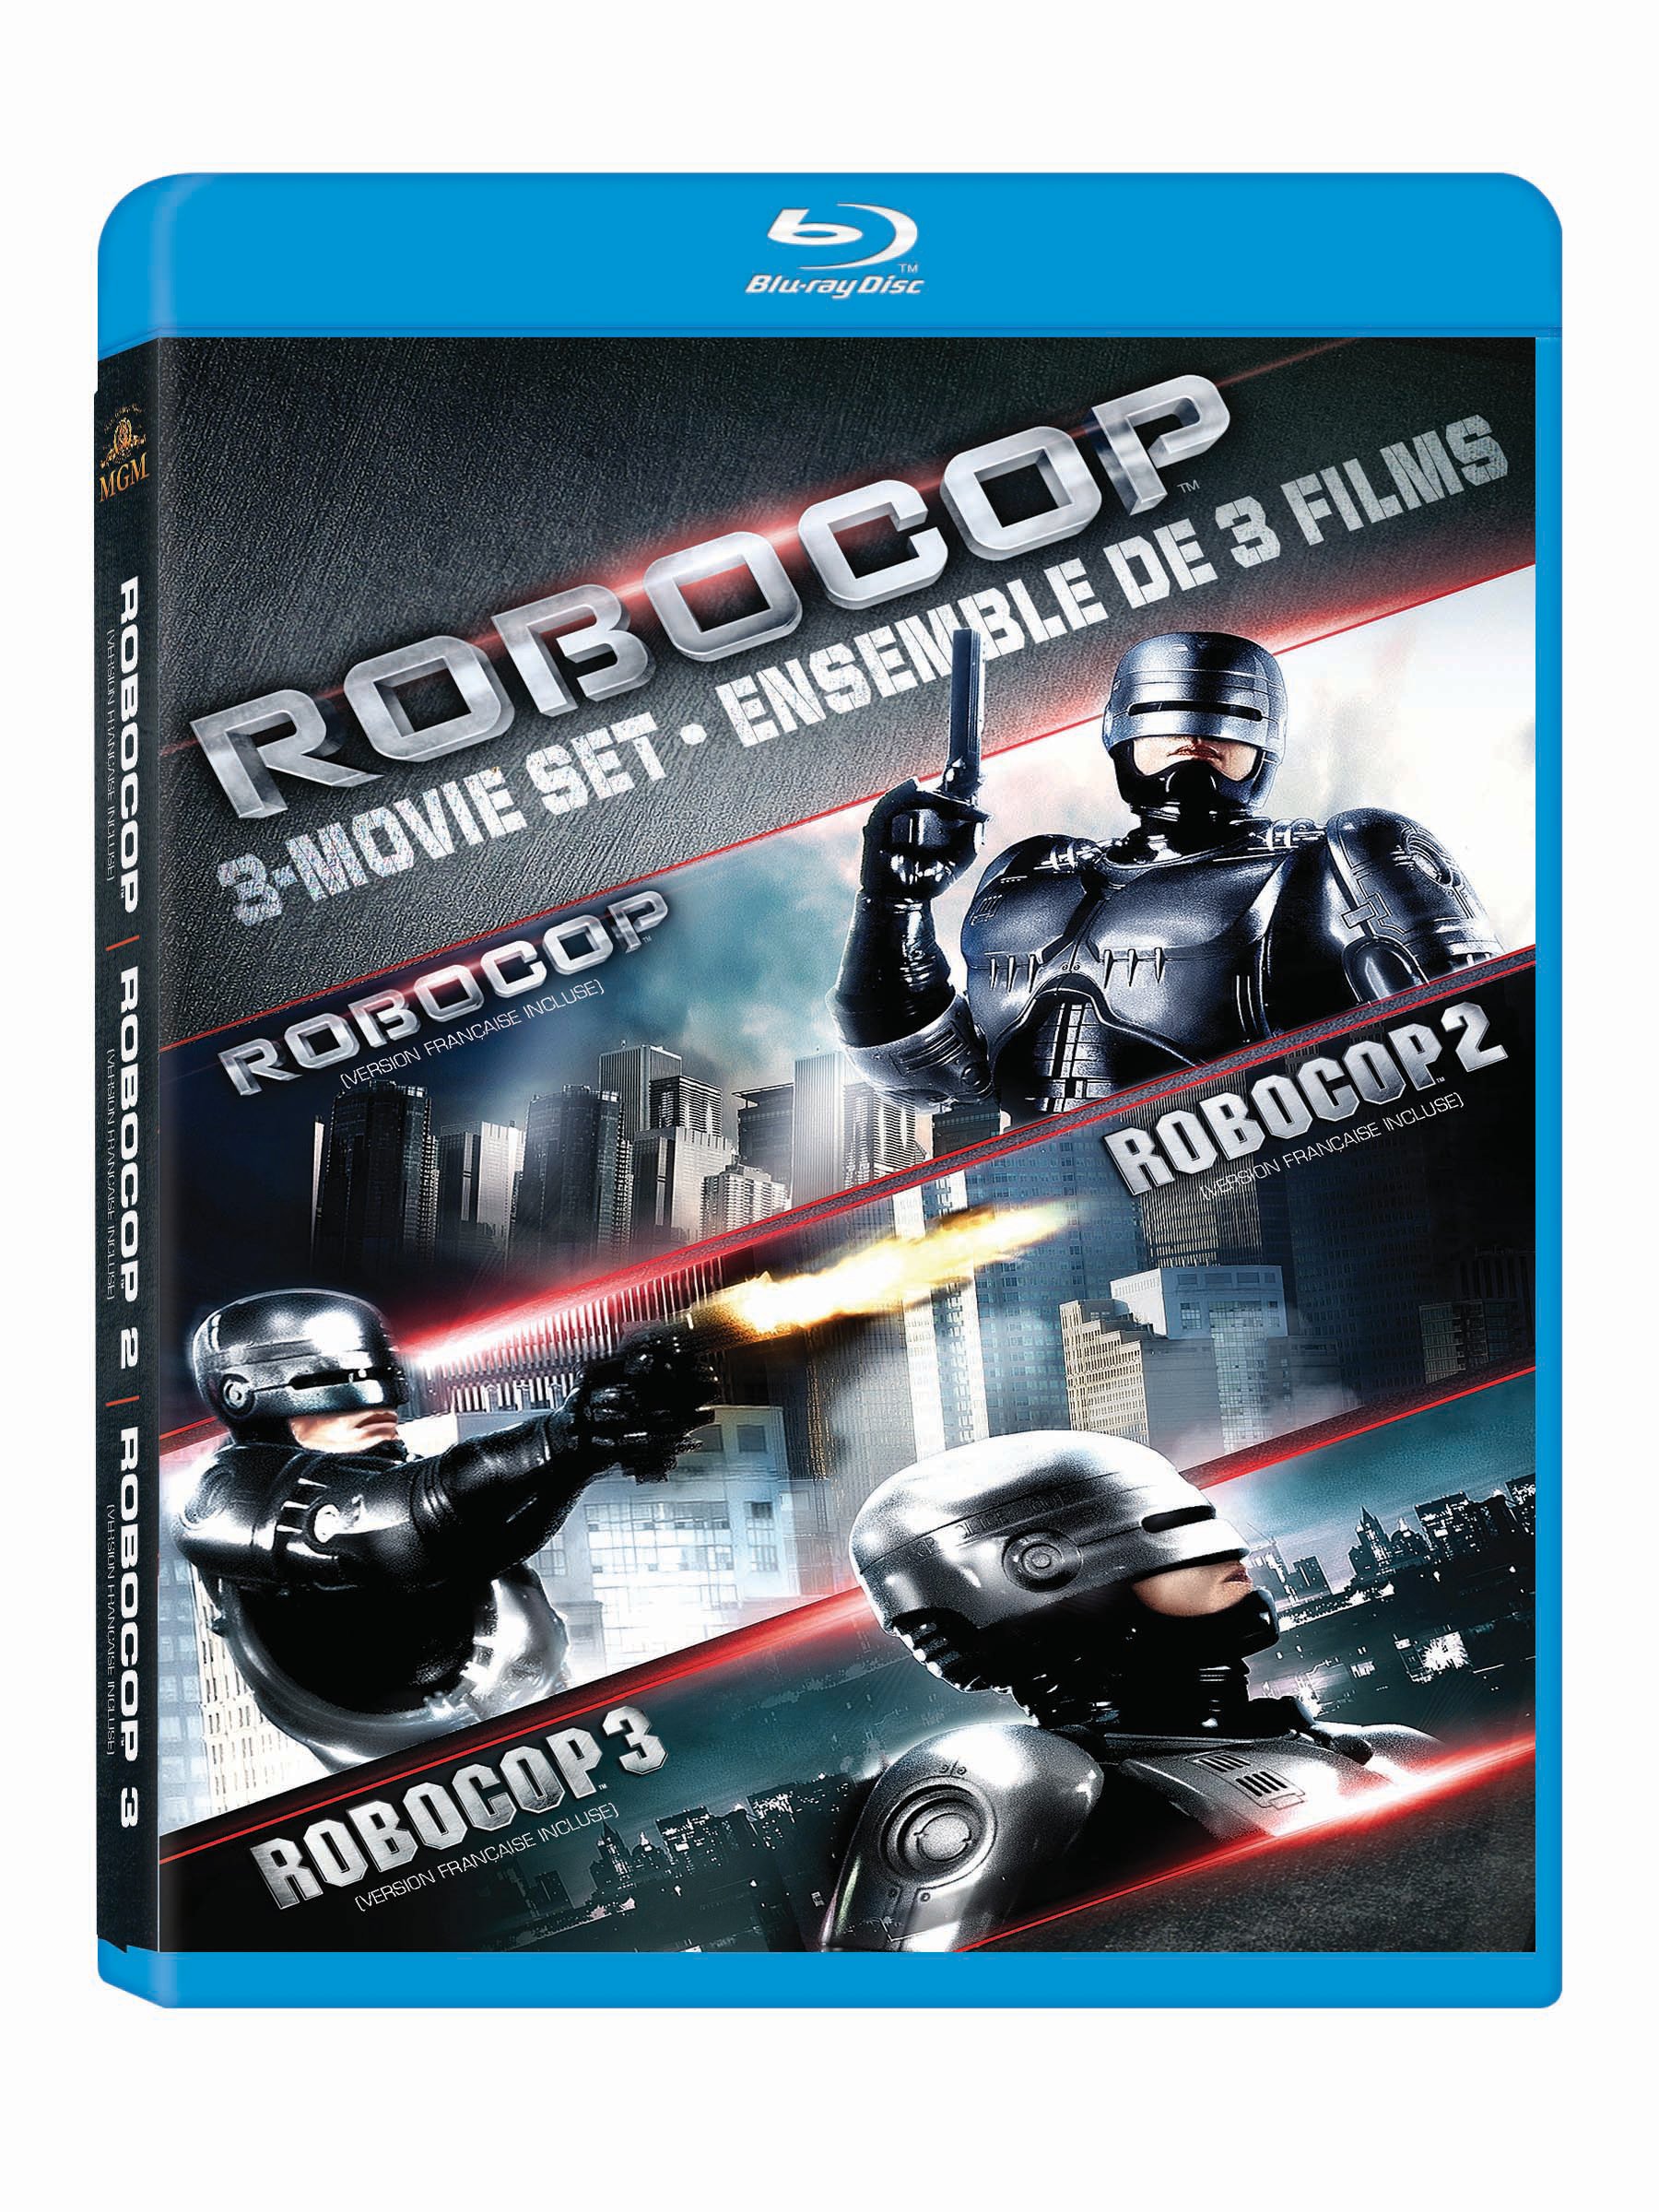 robocop-trilogy-3-movies-collection-robocop-1987-robocop-2-1990-robocop-3-1993